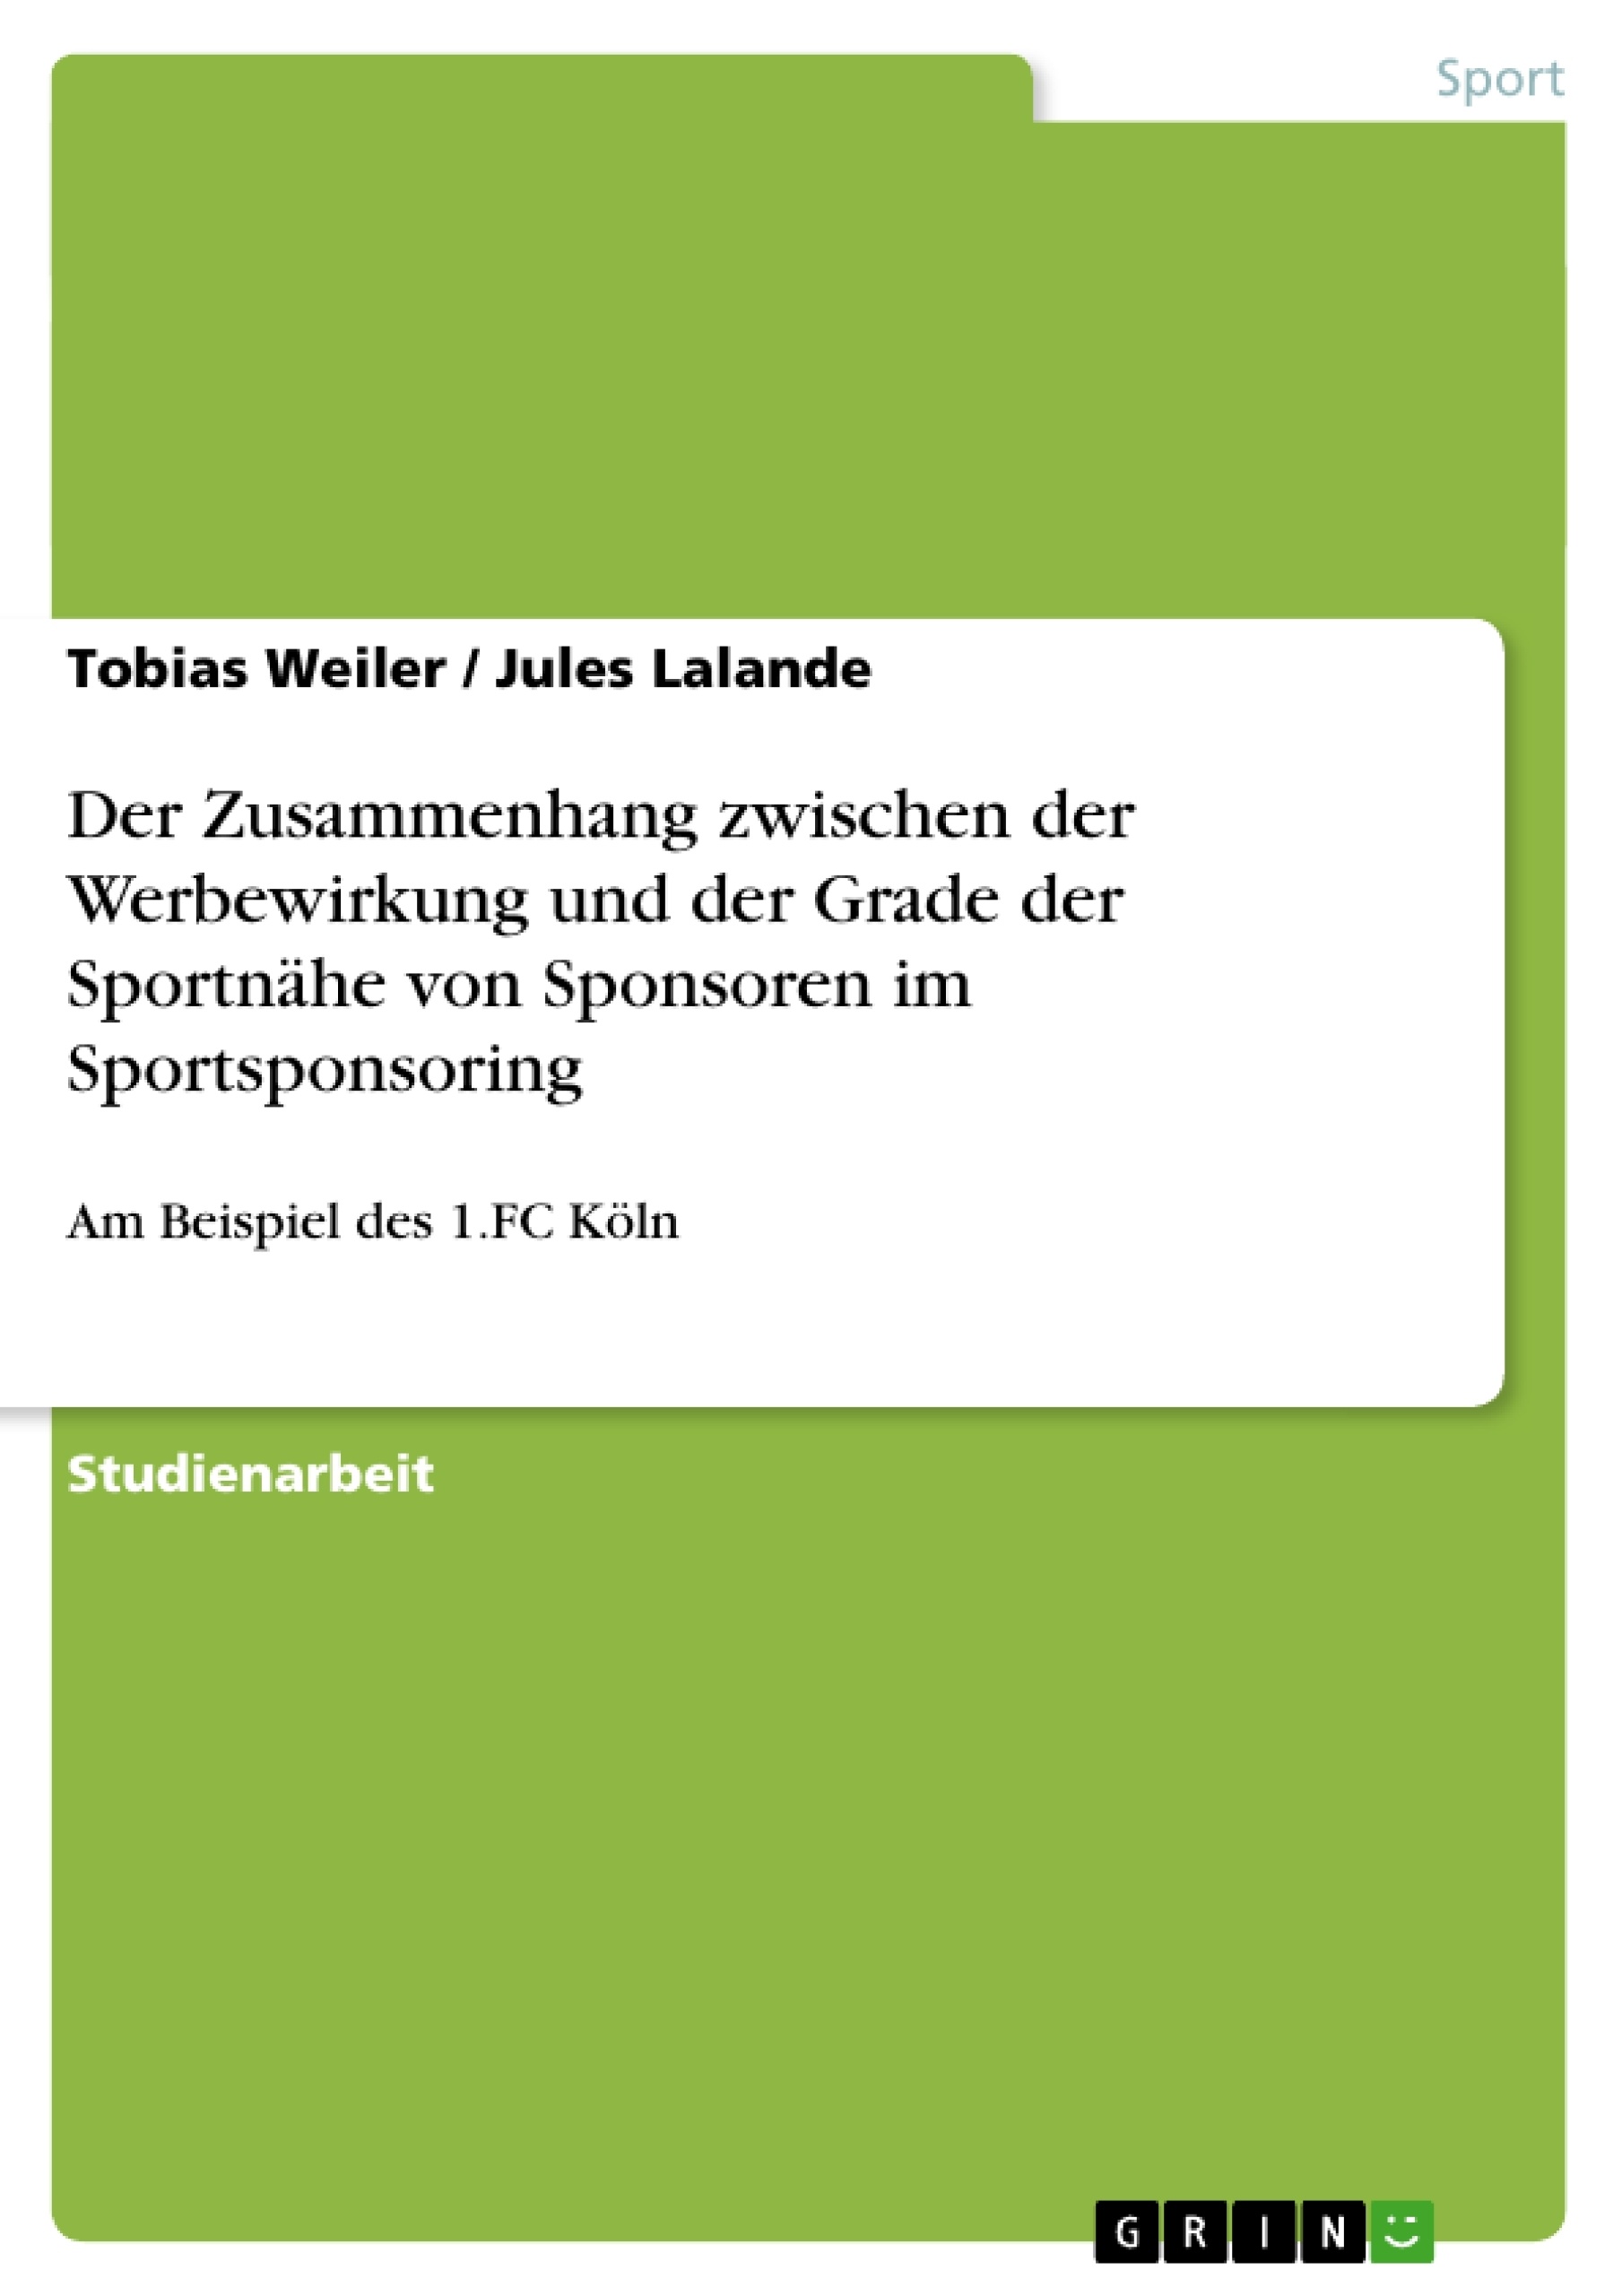 Titre: Der Zusammenhang zwischen der Werbewirkung und der Grade der Sportnähe von Sponsoren im Sportsponsoring